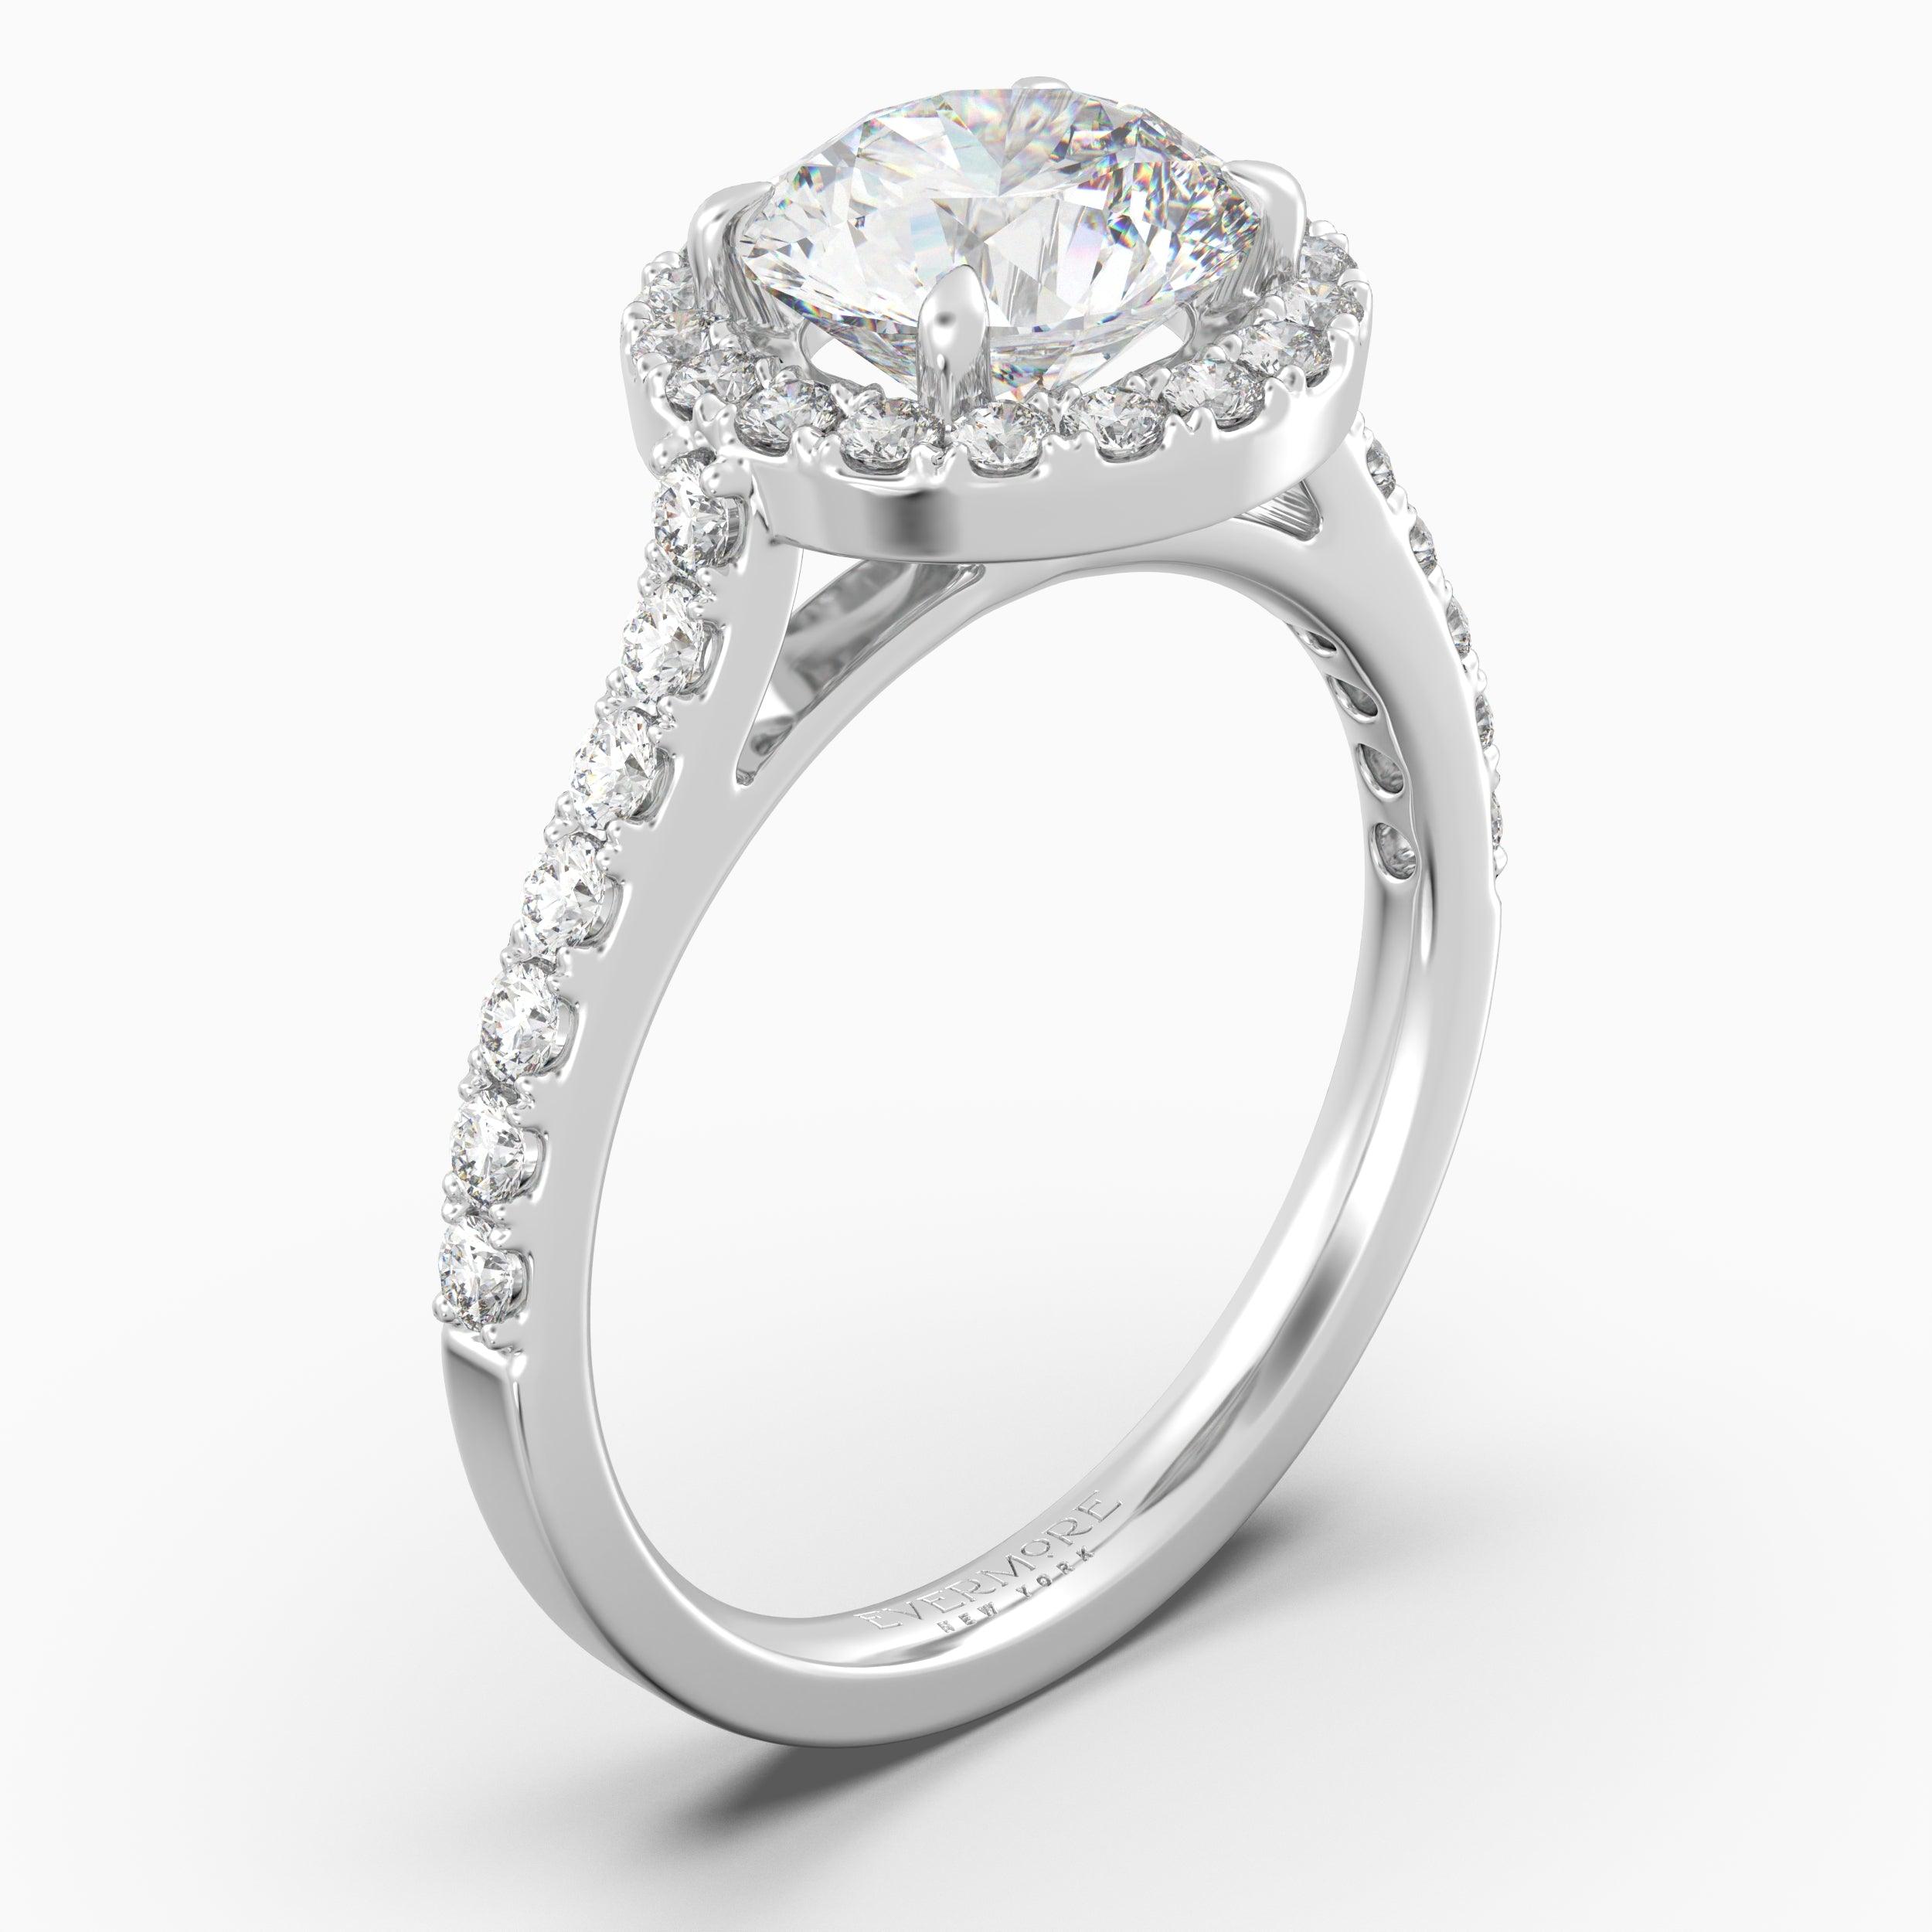 The Gabriel Round Brilliant Halo - White Gold / 0.5 ct - Evermore Diamonds